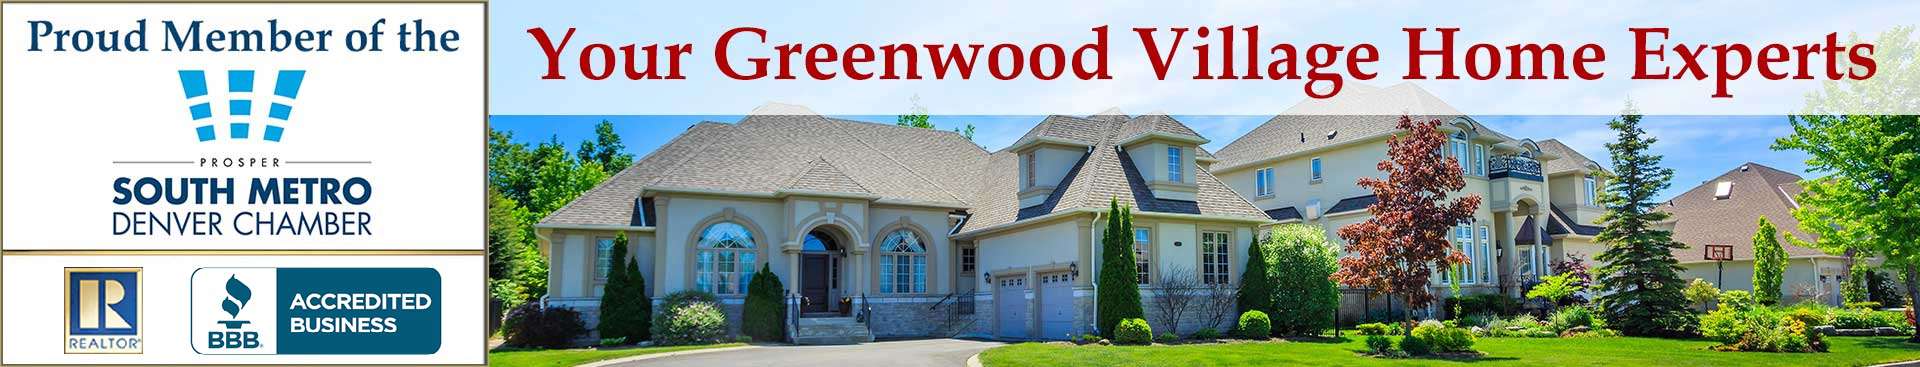 Greenwood Village Banner